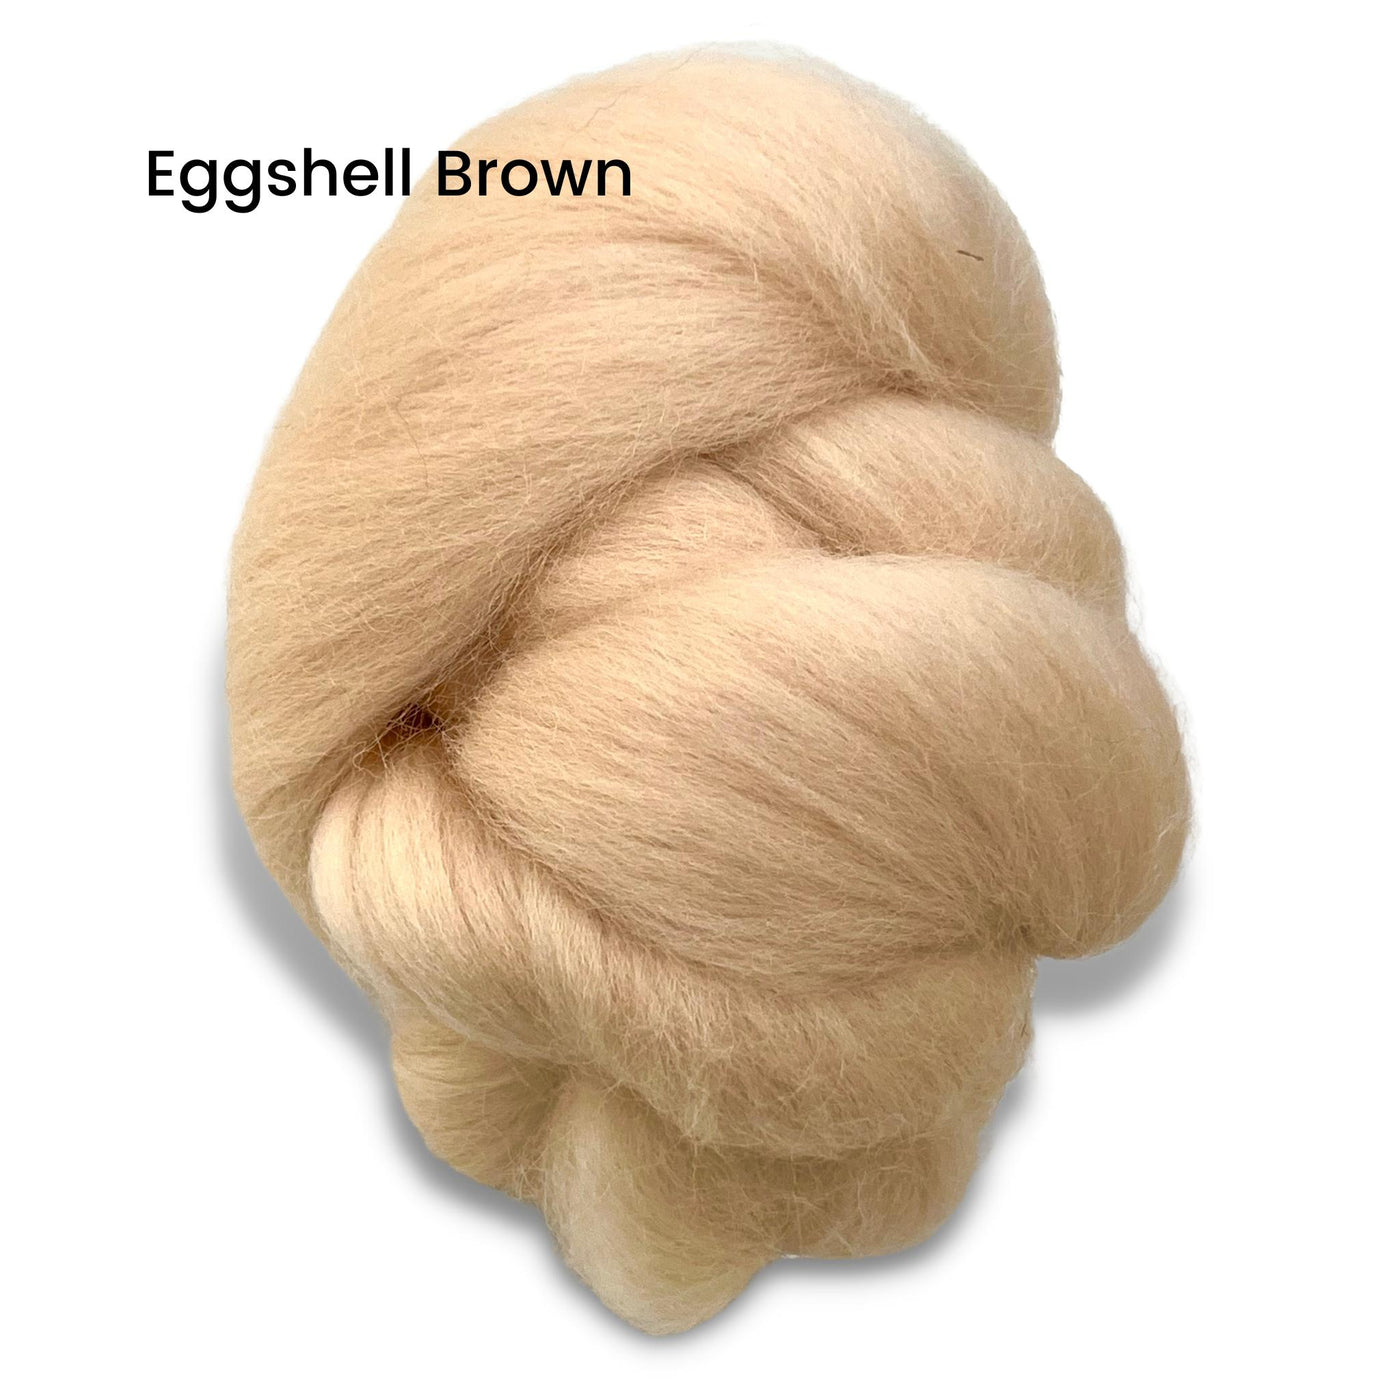 Eggshell Brown Corriedale Wool Roving Top